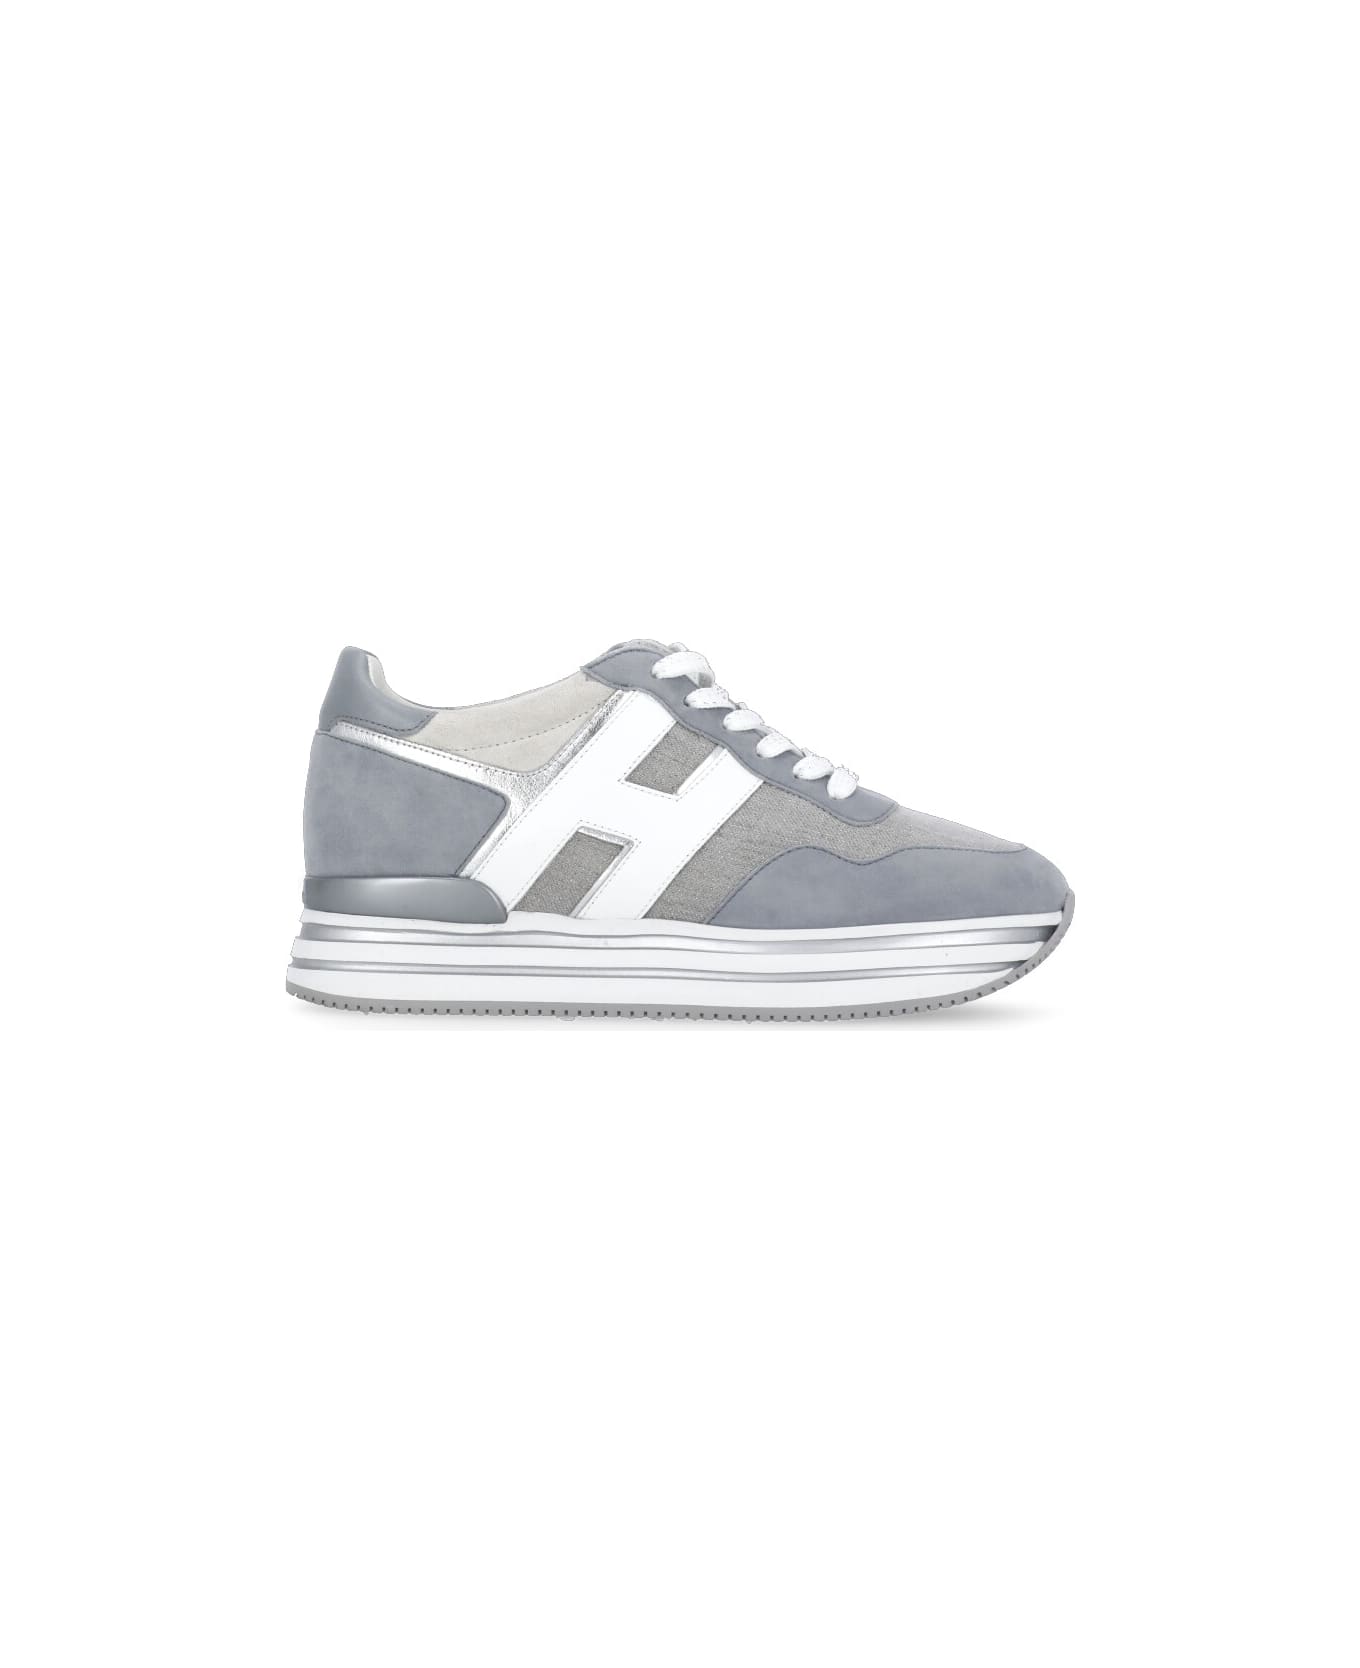 Hogan H483 Sneakers - Grey スニーカー